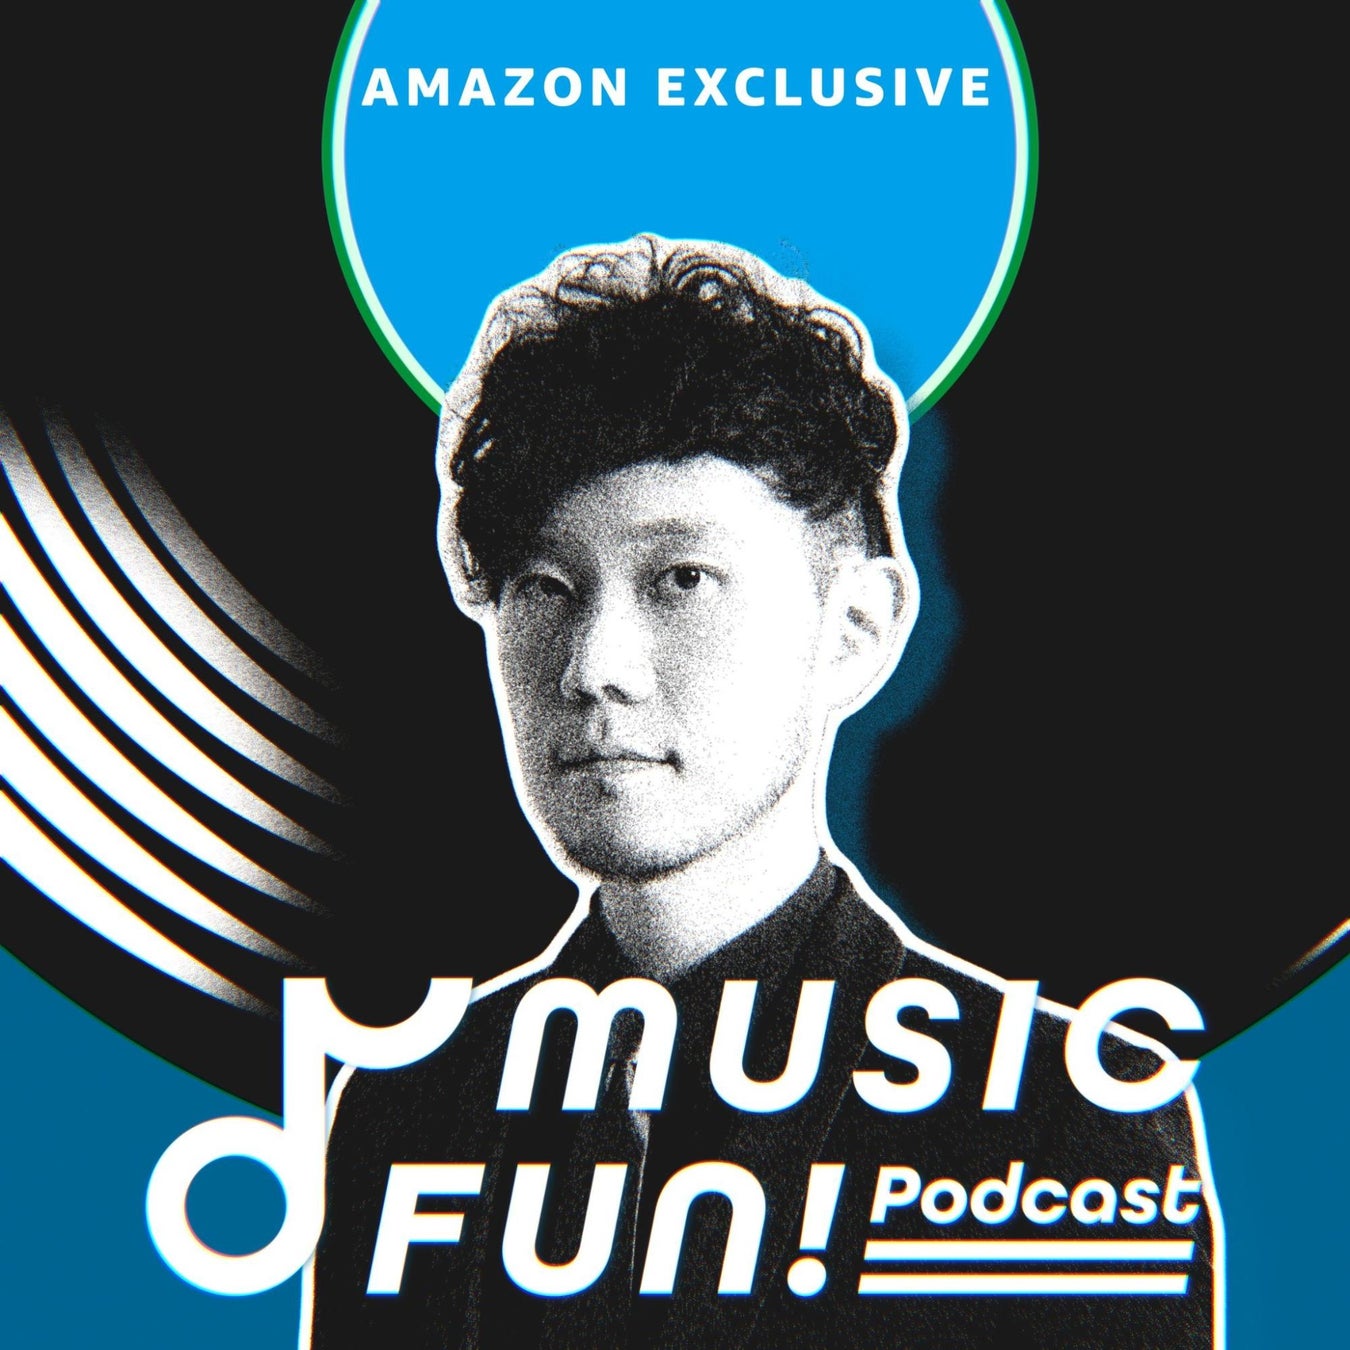 Amazon Musicとのコラボレーションによるポッドキャスト番組「MUSIC FUN! Podcast」をAmazon Musicにおける独占配信にて始動